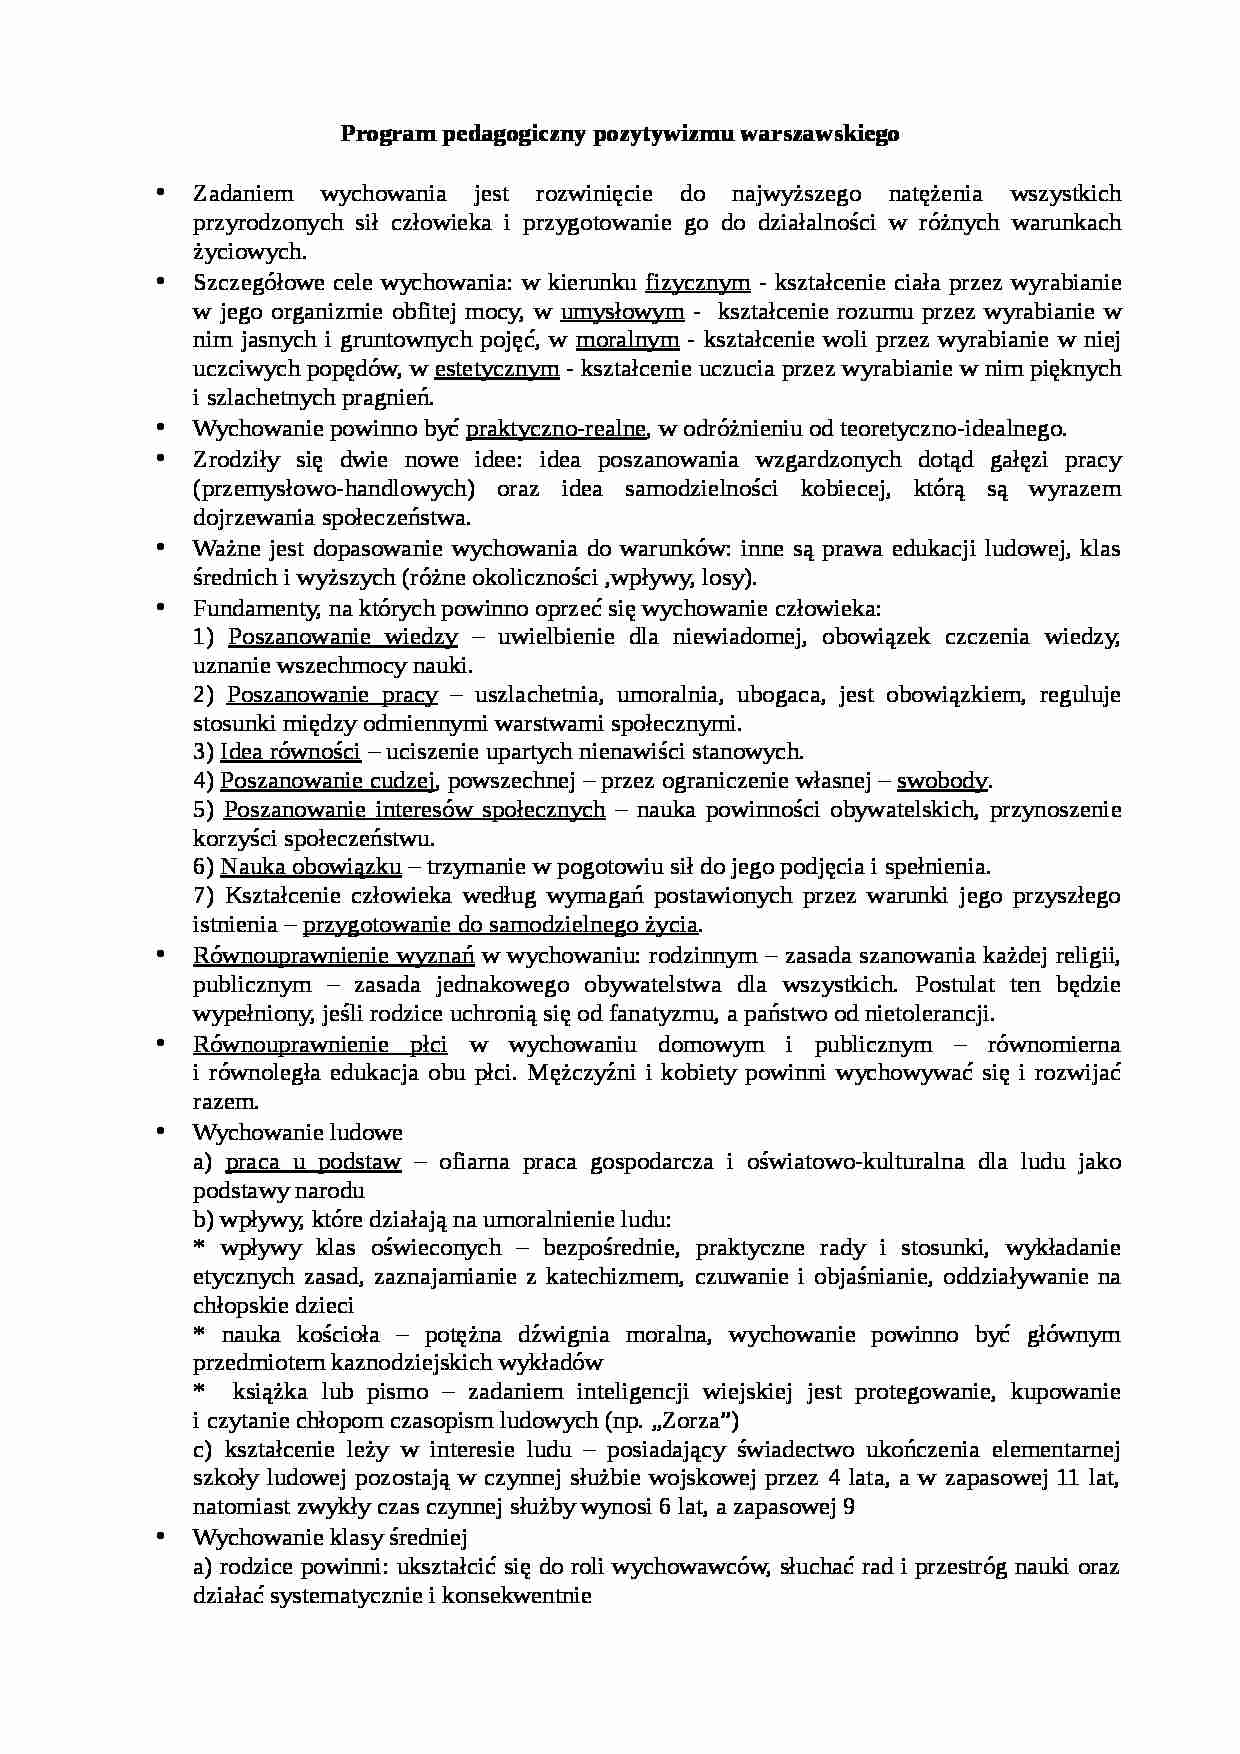 Program pedagogiczny pozytywizmu warszawskiego - strona 1